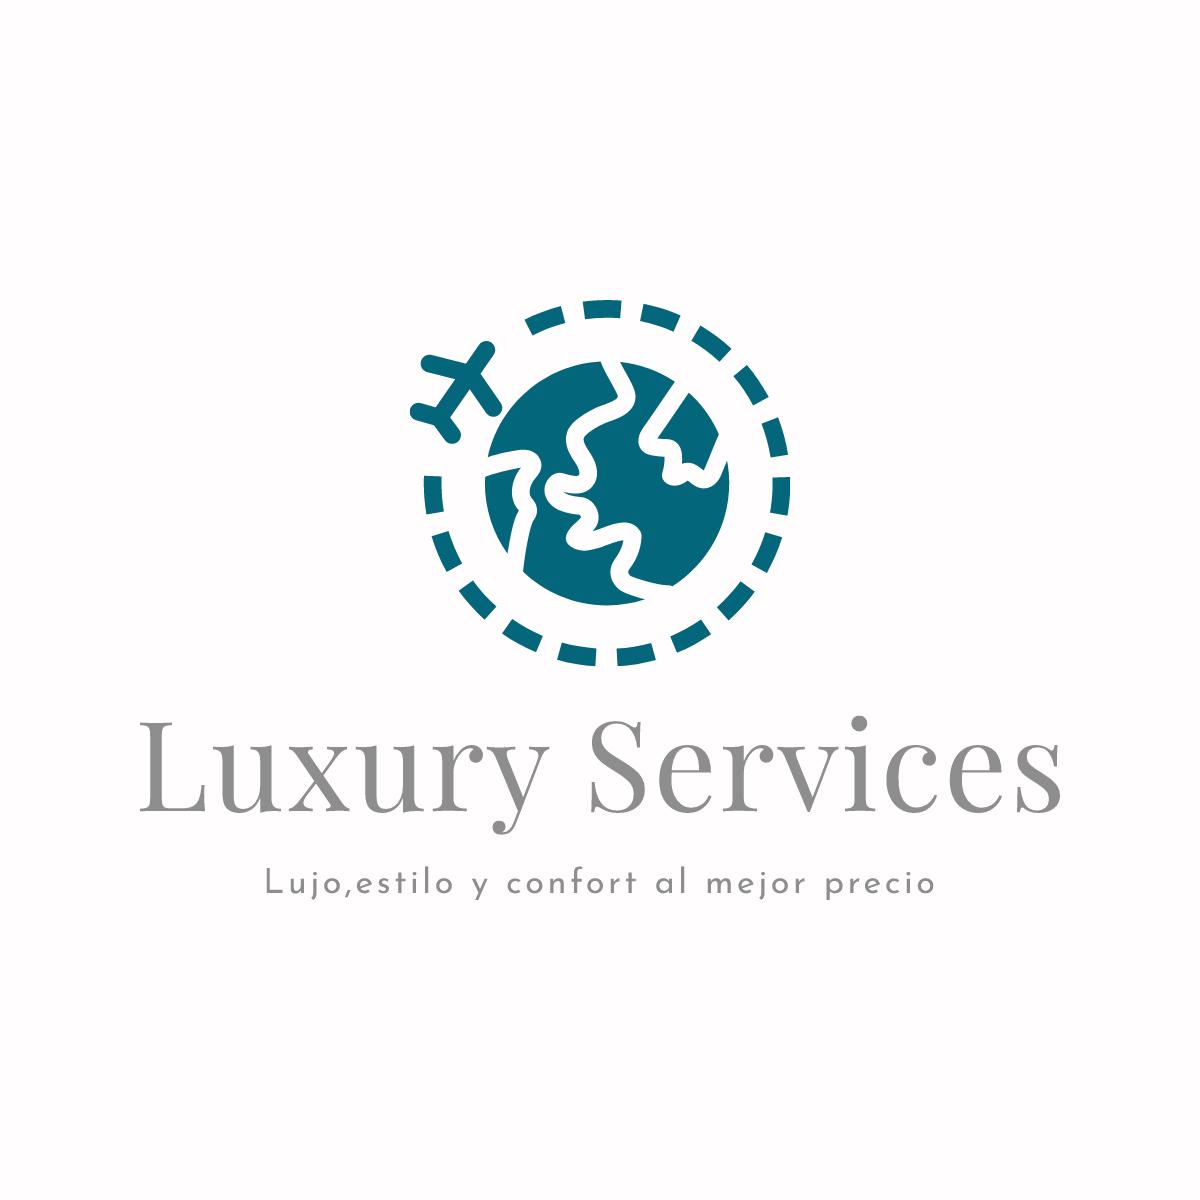 Luxury Services